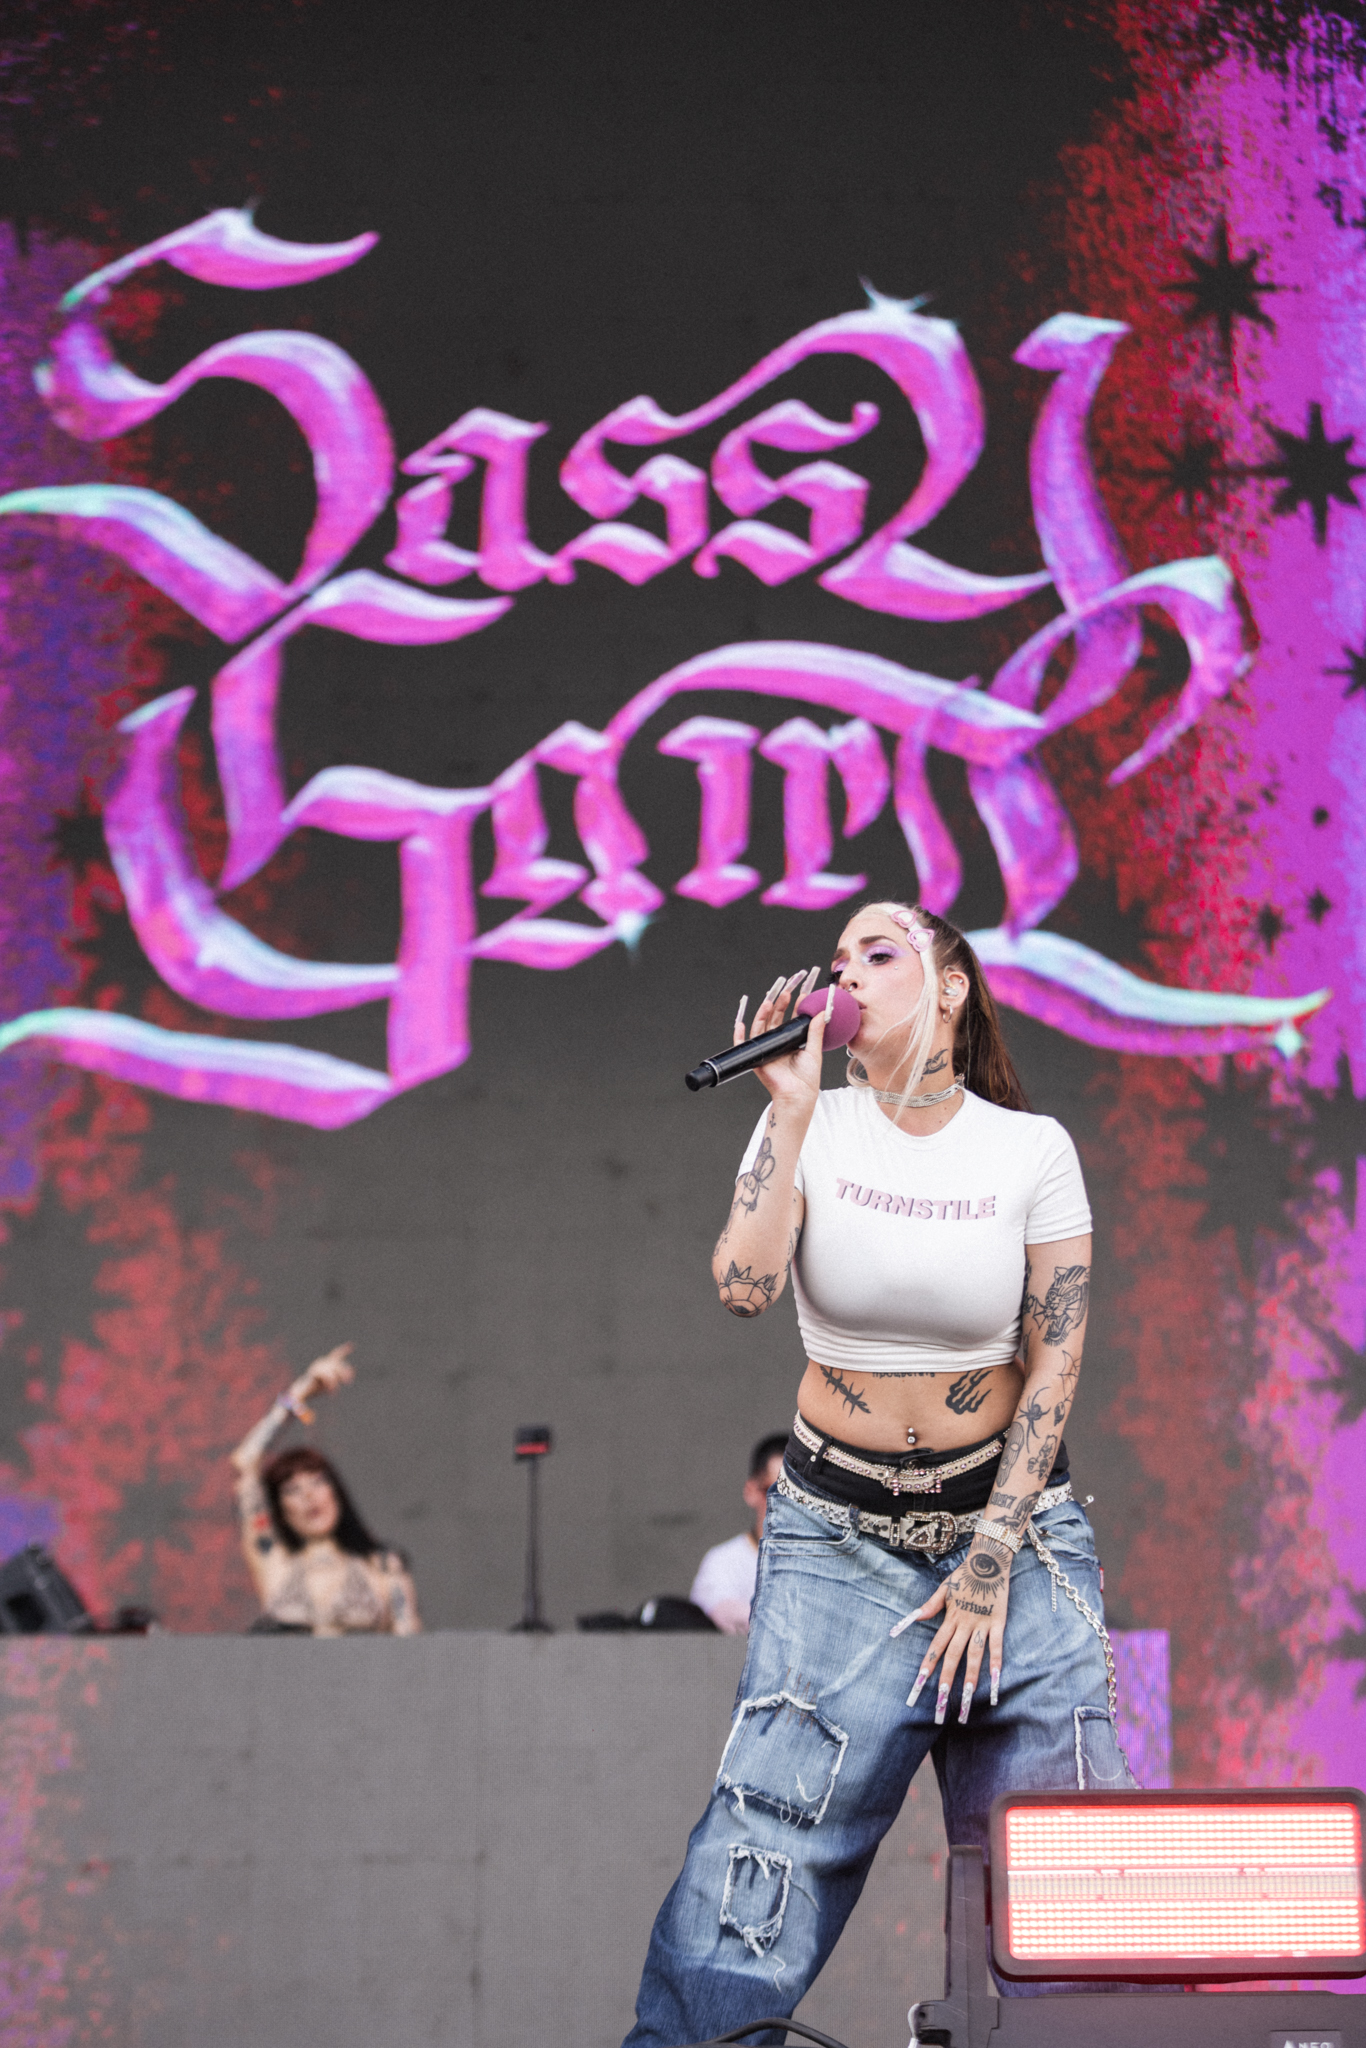 SassyGirl abrió el escenario Perry's en Lollapalooza 2023